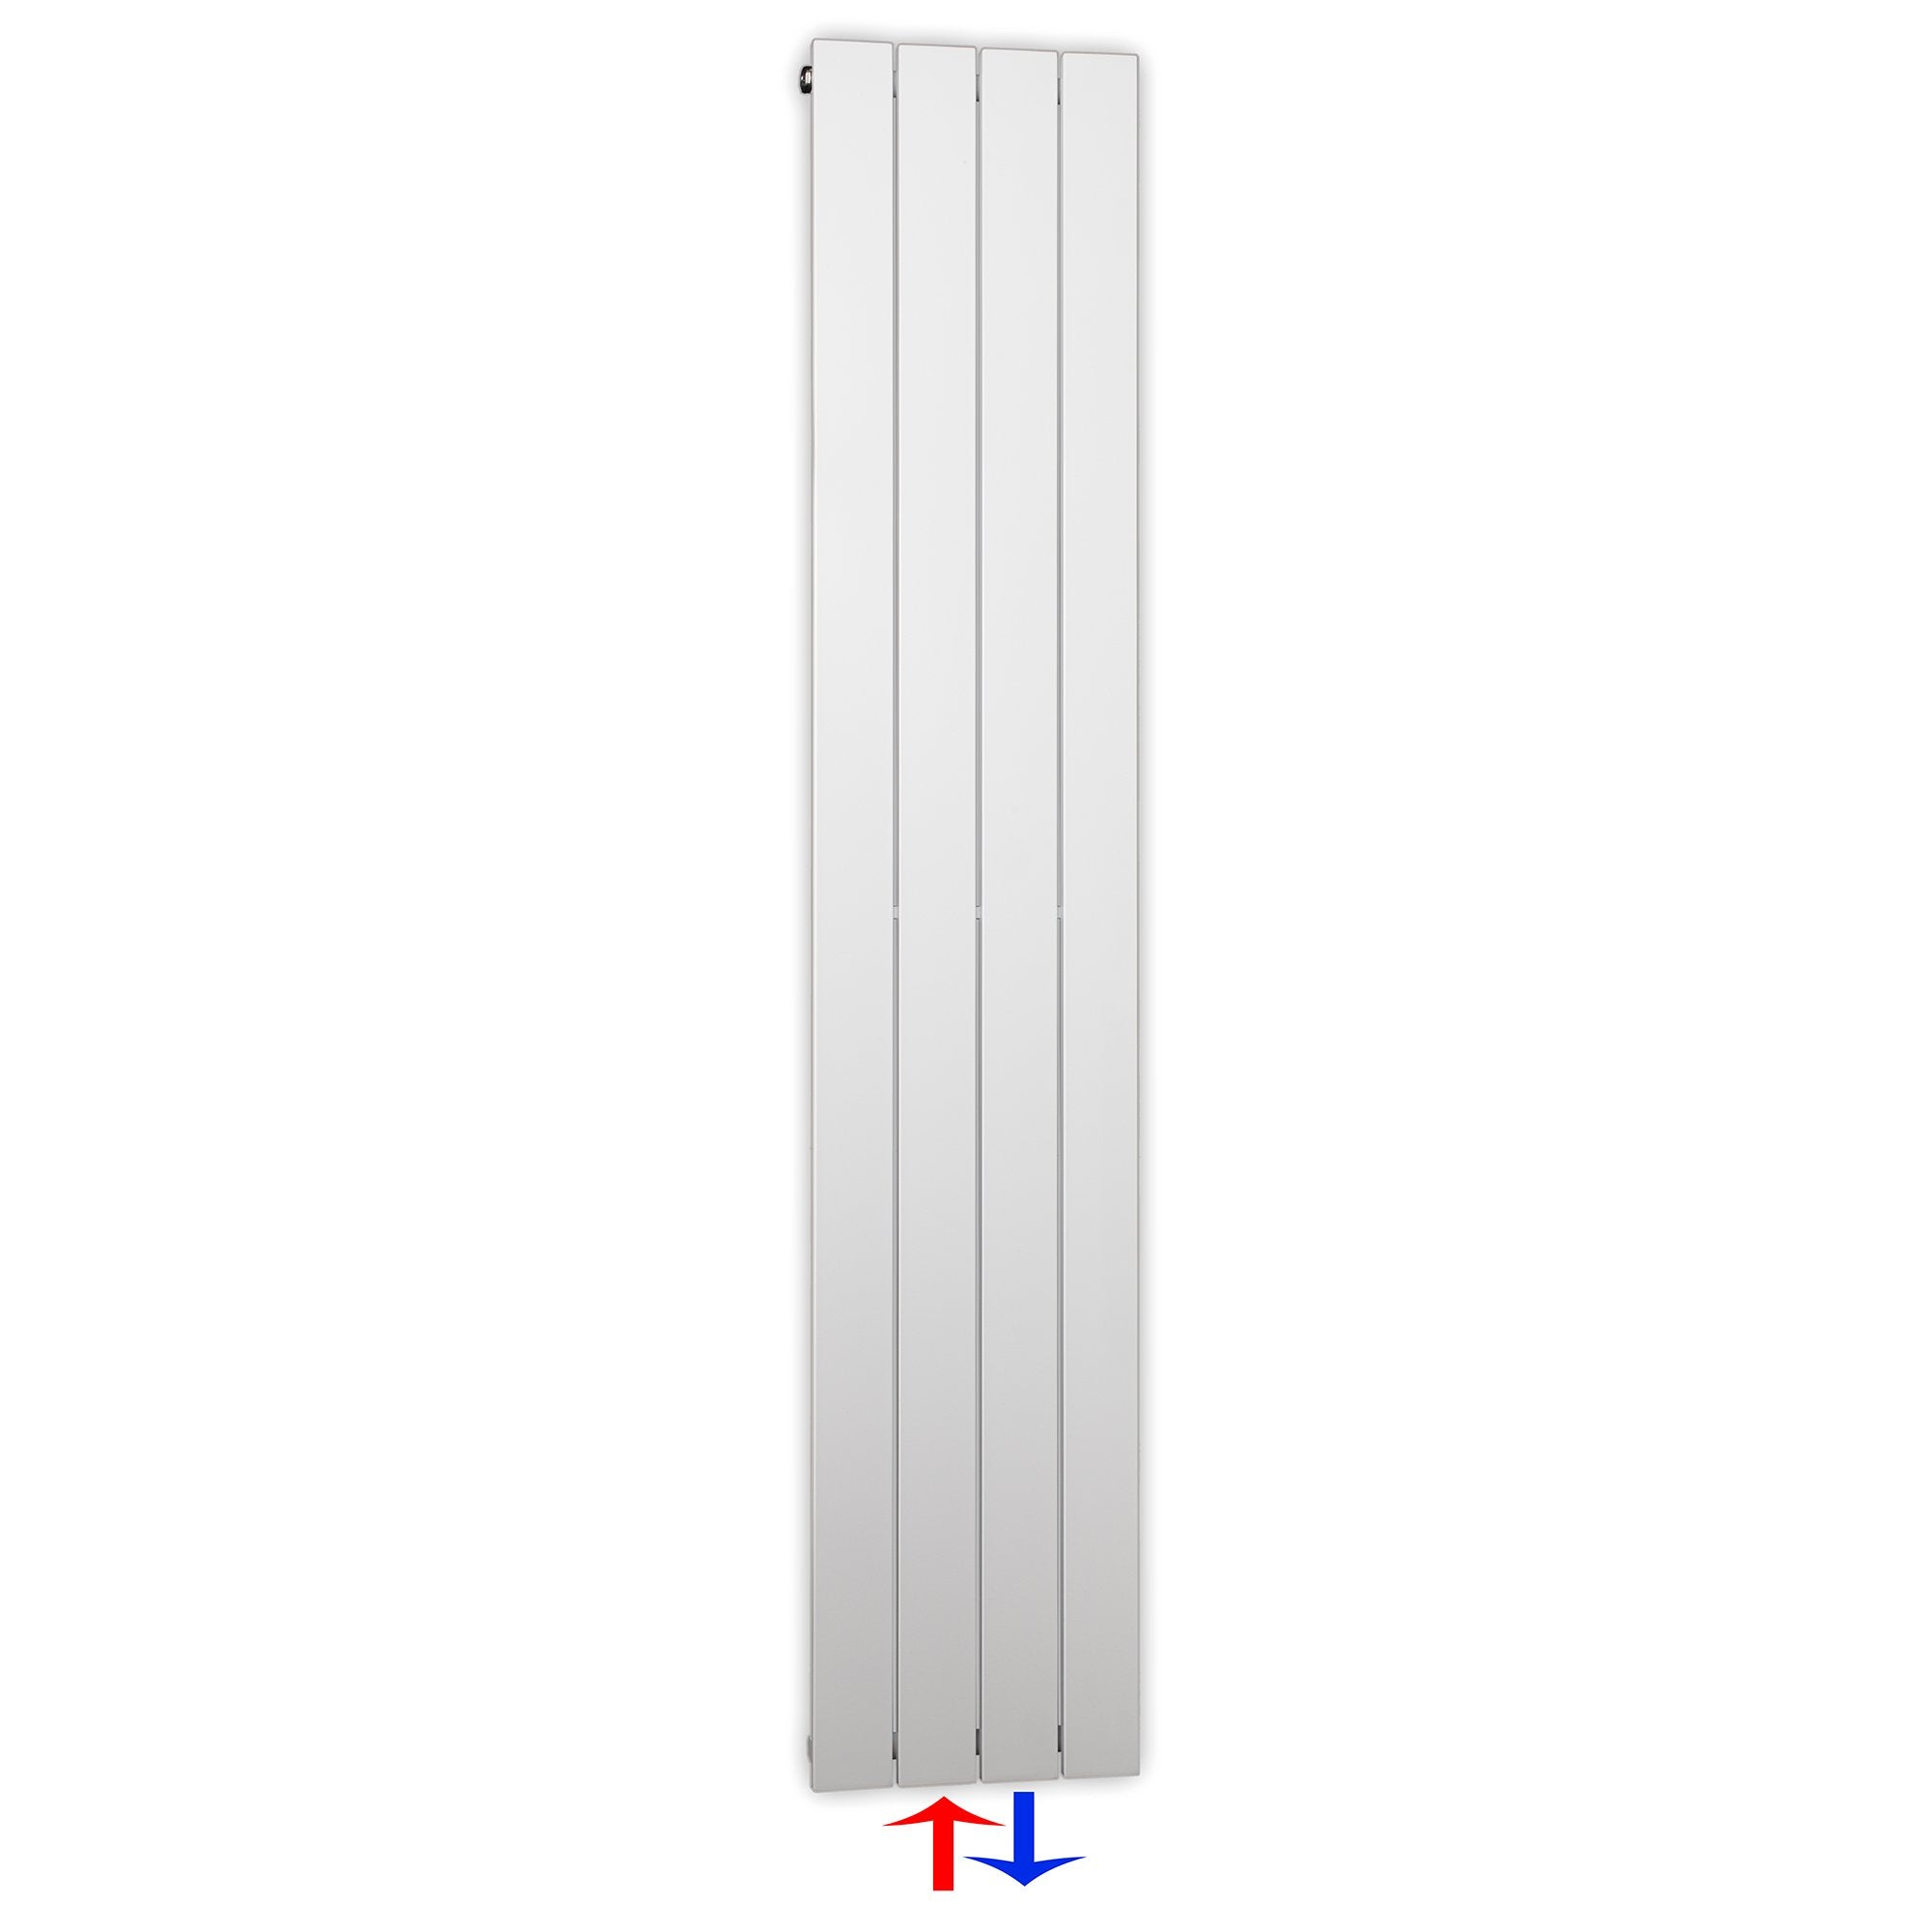 Design Paneelheizkörper vertikal 1500 x 298 weiß Heizkörper Badheizkörper flach Badezimmer Heizung - heizkoerper.shop